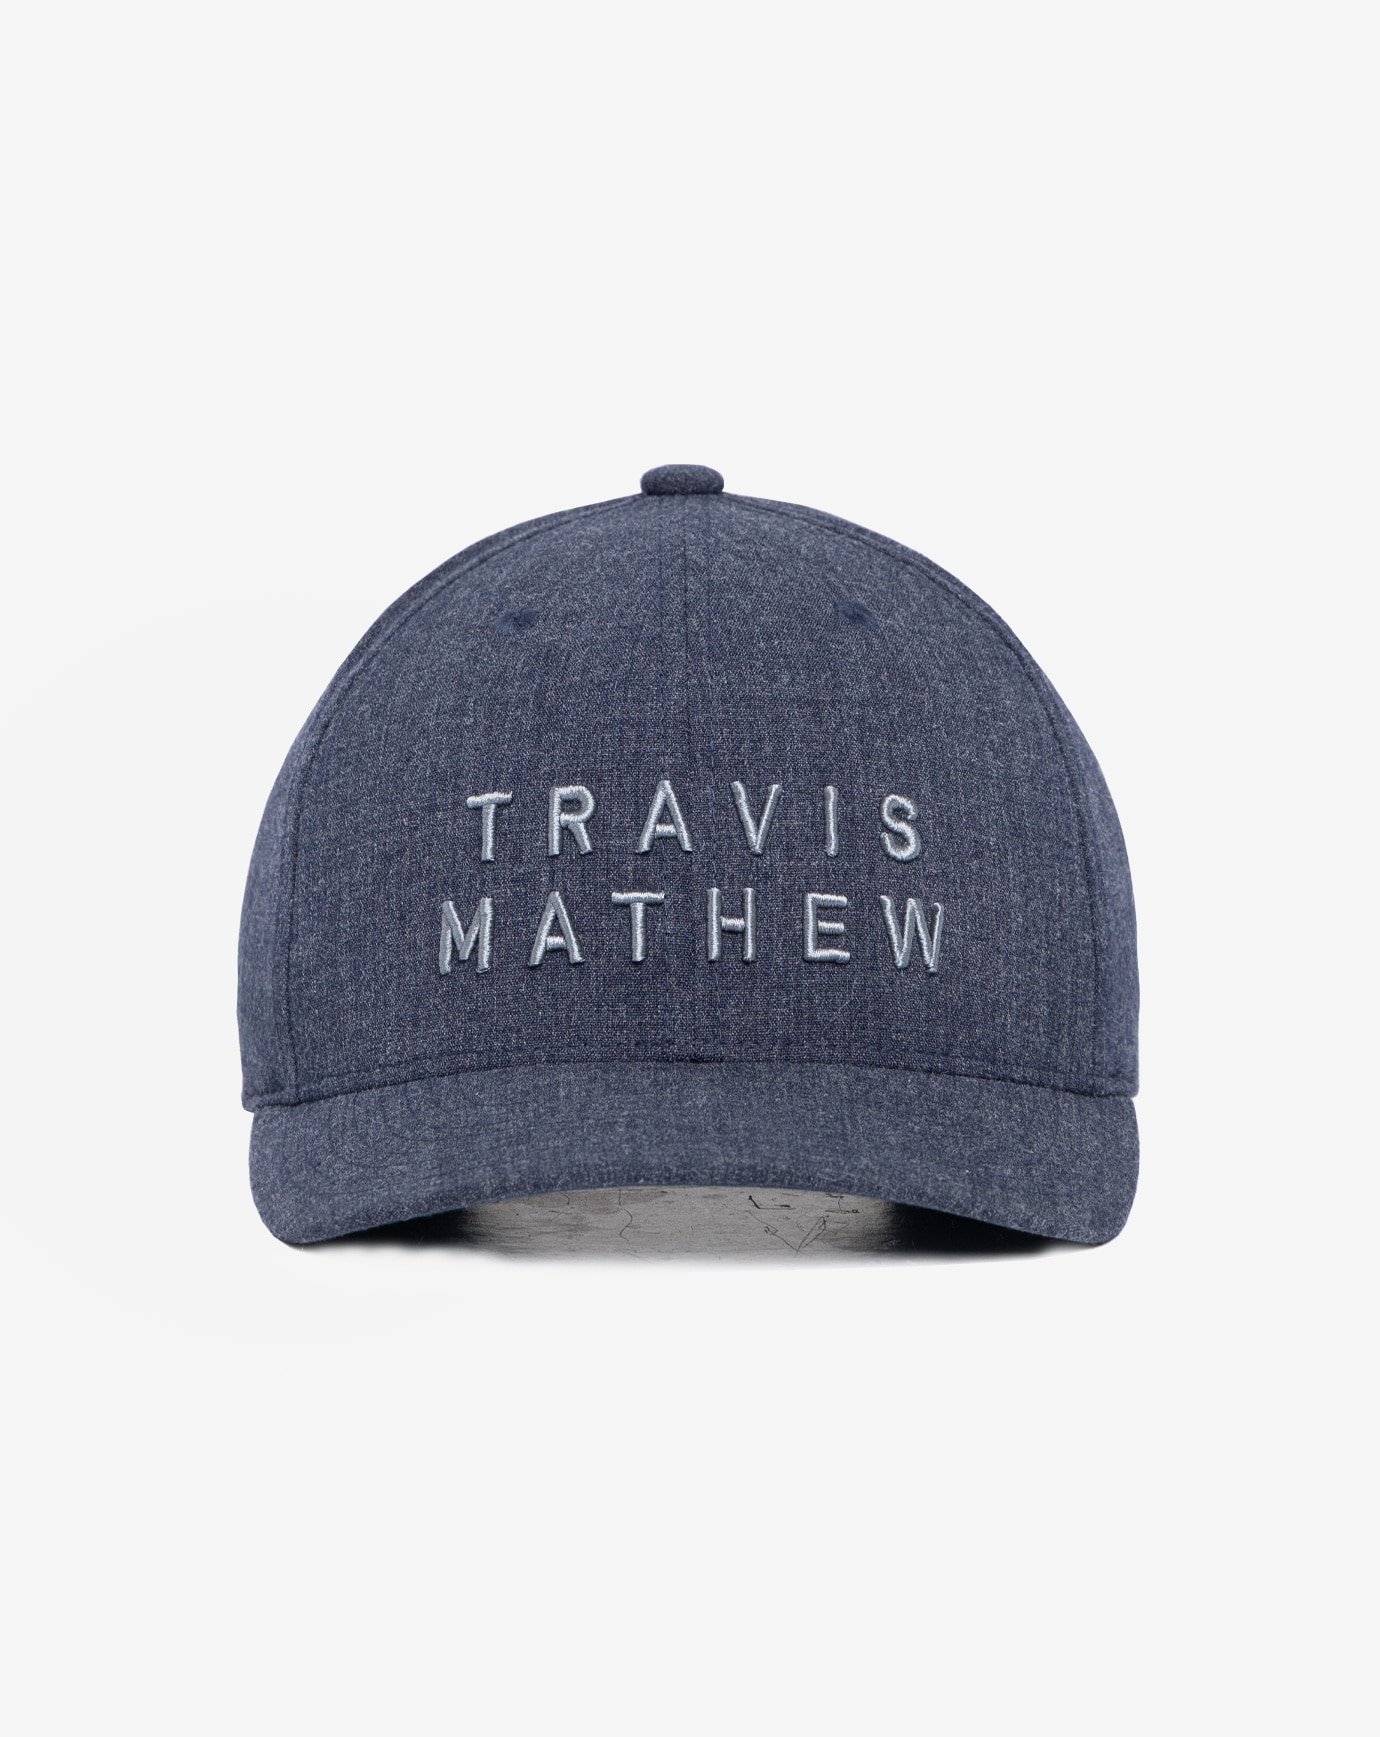 HATS | TM | TravisMathew